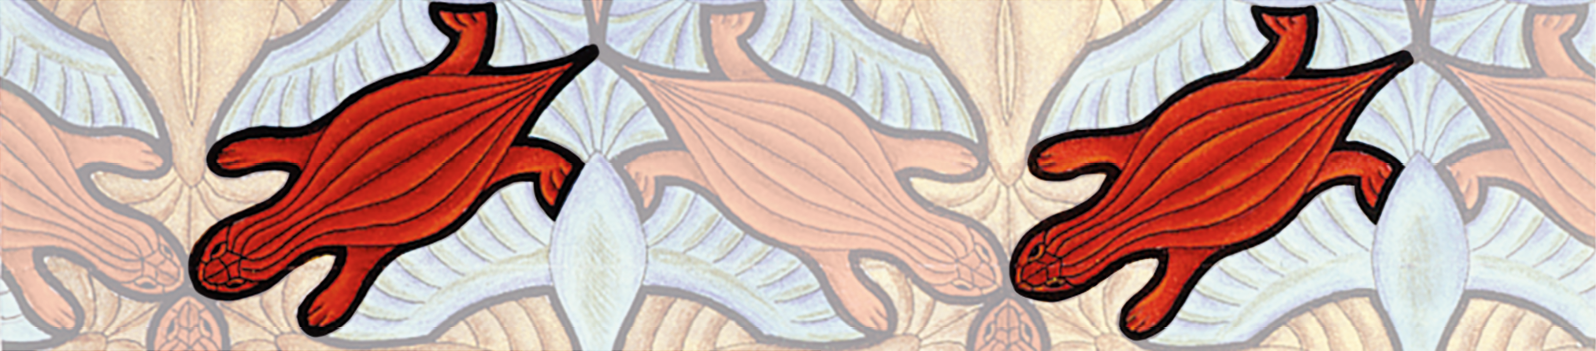 Ilustração. Corte retangular da fotografia da obra de arte da página anterior com dois lagartos vermelhos lado a lado em destaque.